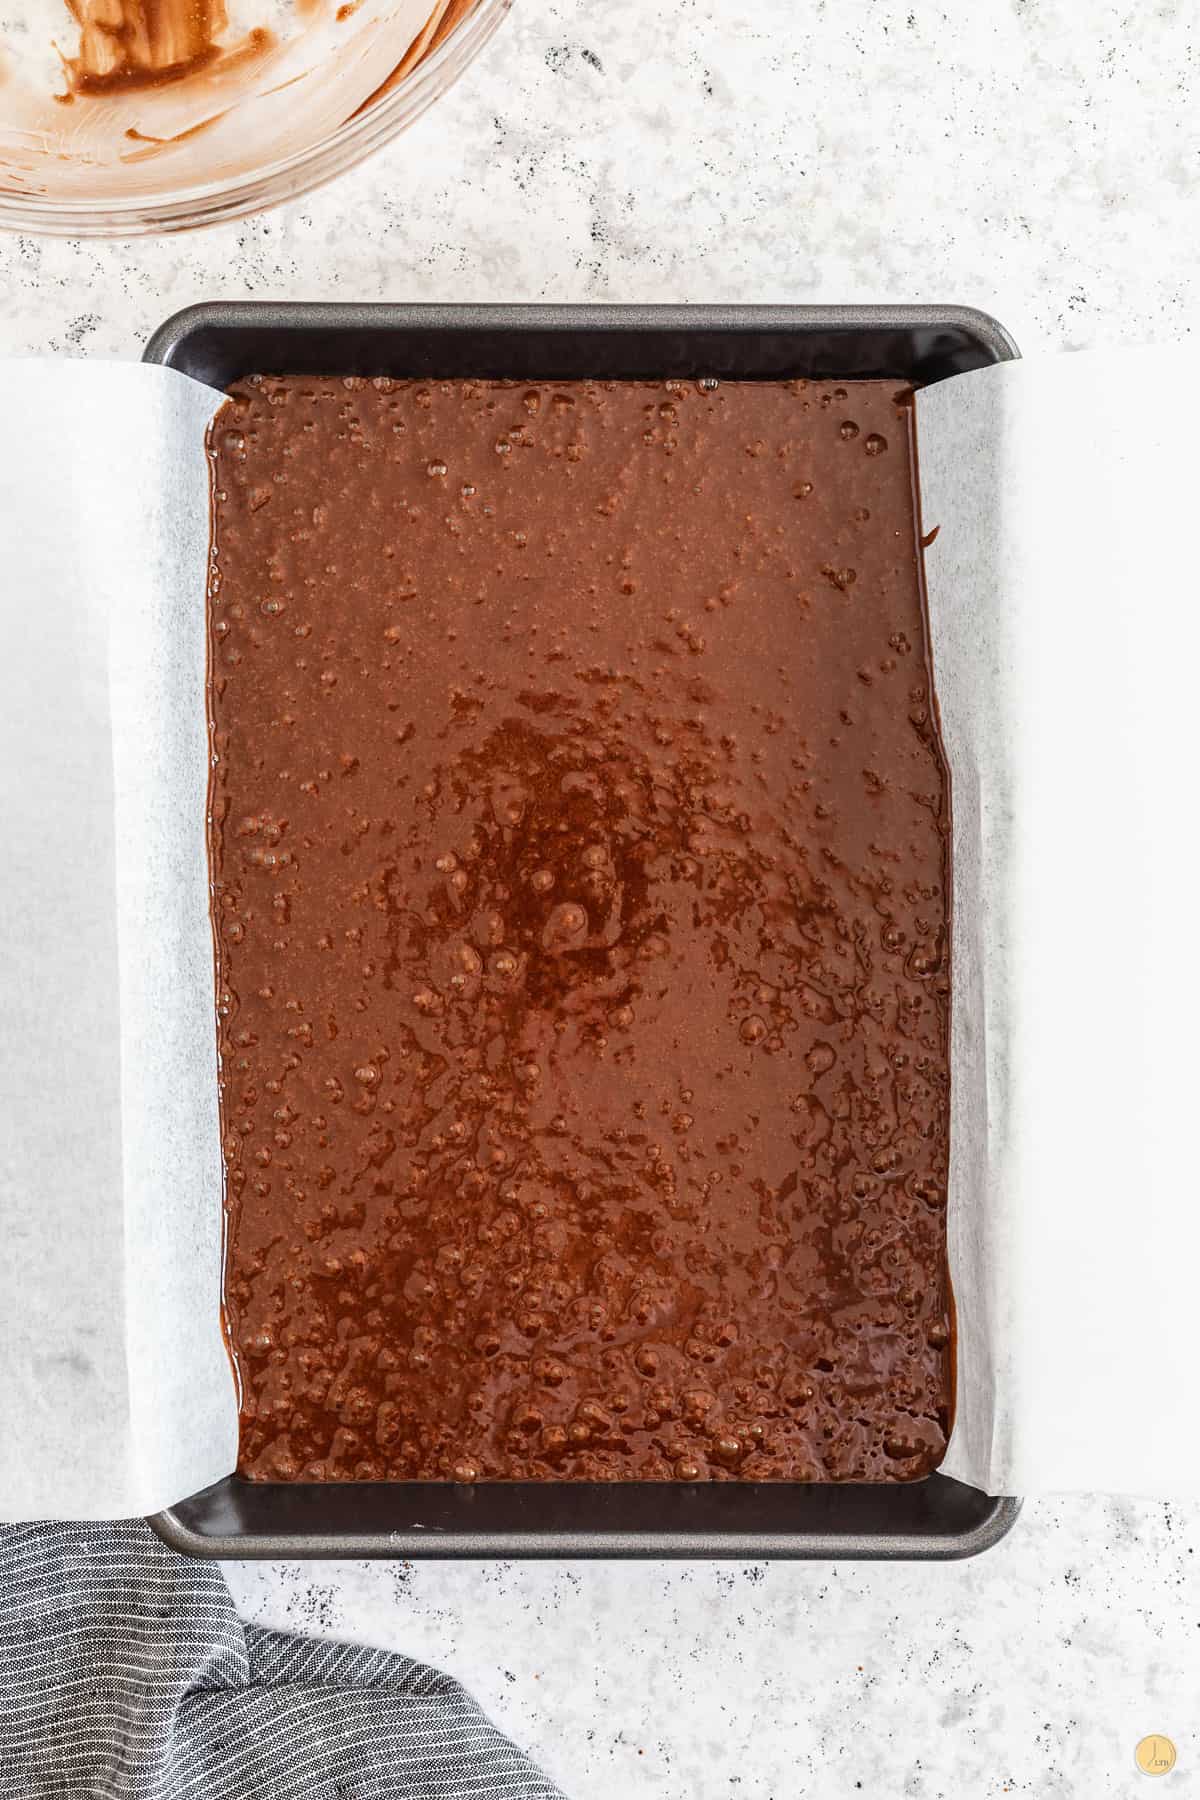 brownie batter in a pan